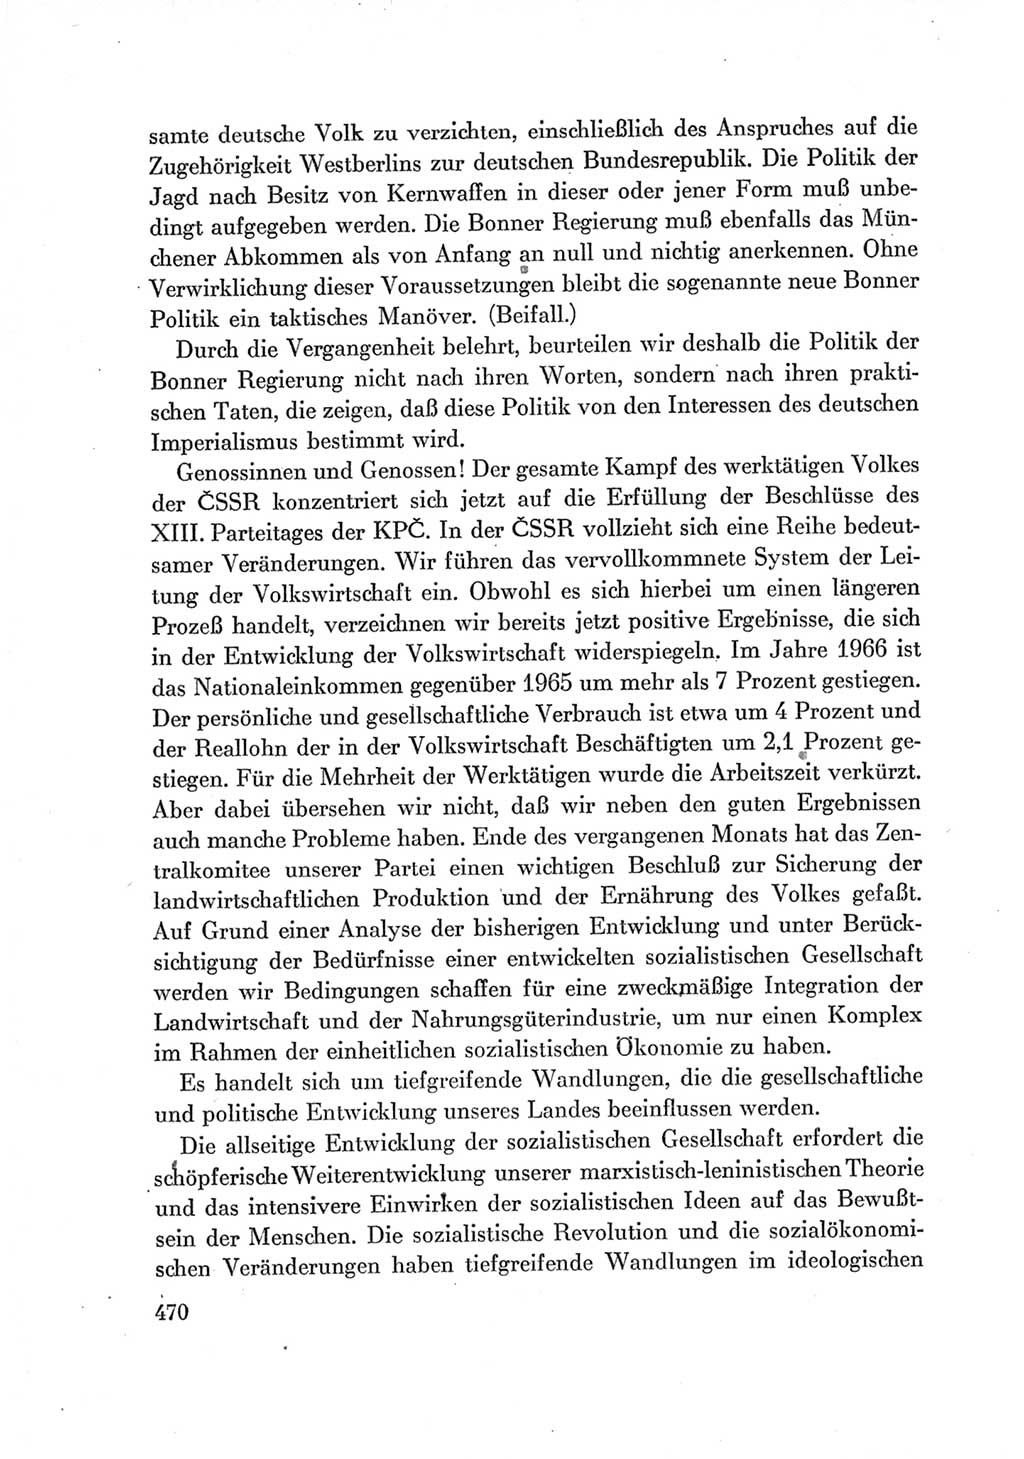 Protokoll der Verhandlungen des Ⅶ. Parteitages der Sozialistischen Einheitspartei Deutschlands (SED) [Deutsche Demokratische Republik (DDR)] 1967, Band Ⅰ, Seite 470 (Prot. Verh. Ⅶ. PT SED DDR 1967, Bd. Ⅰ, S. 470)